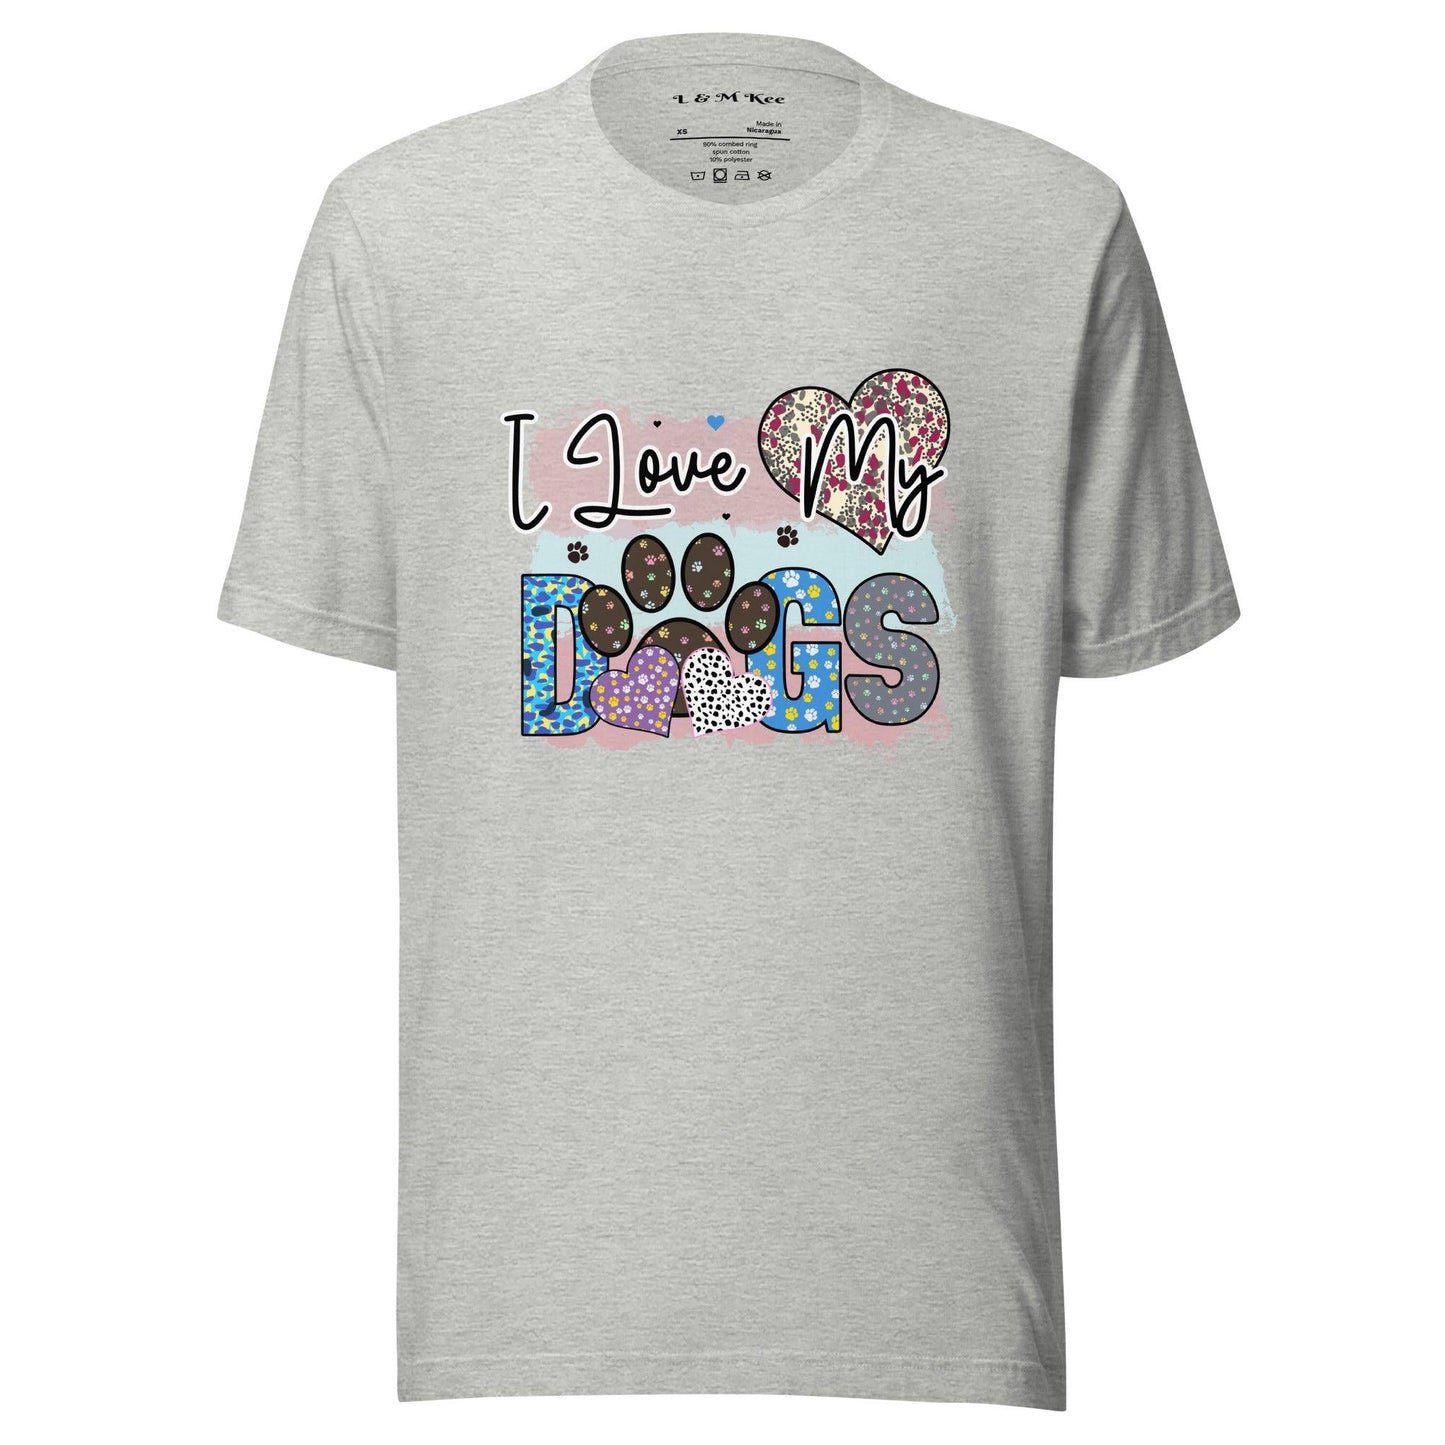 I Love My Dogs T-Shirt - L & M Kee, LLC